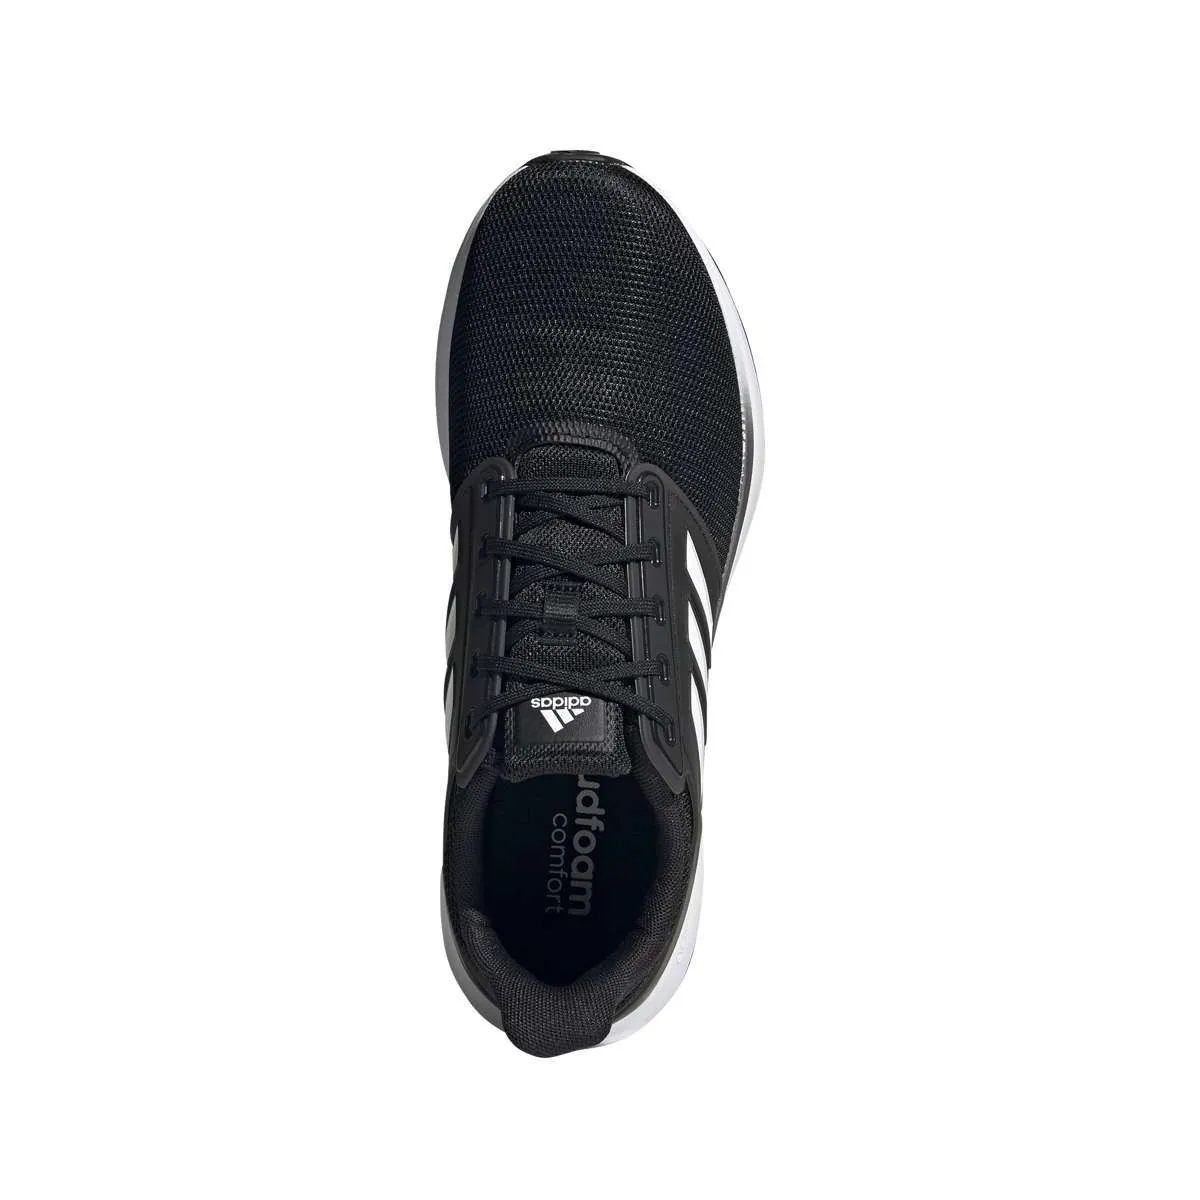 Zapatillas deportivas adidas EQ19 Run negro/gris